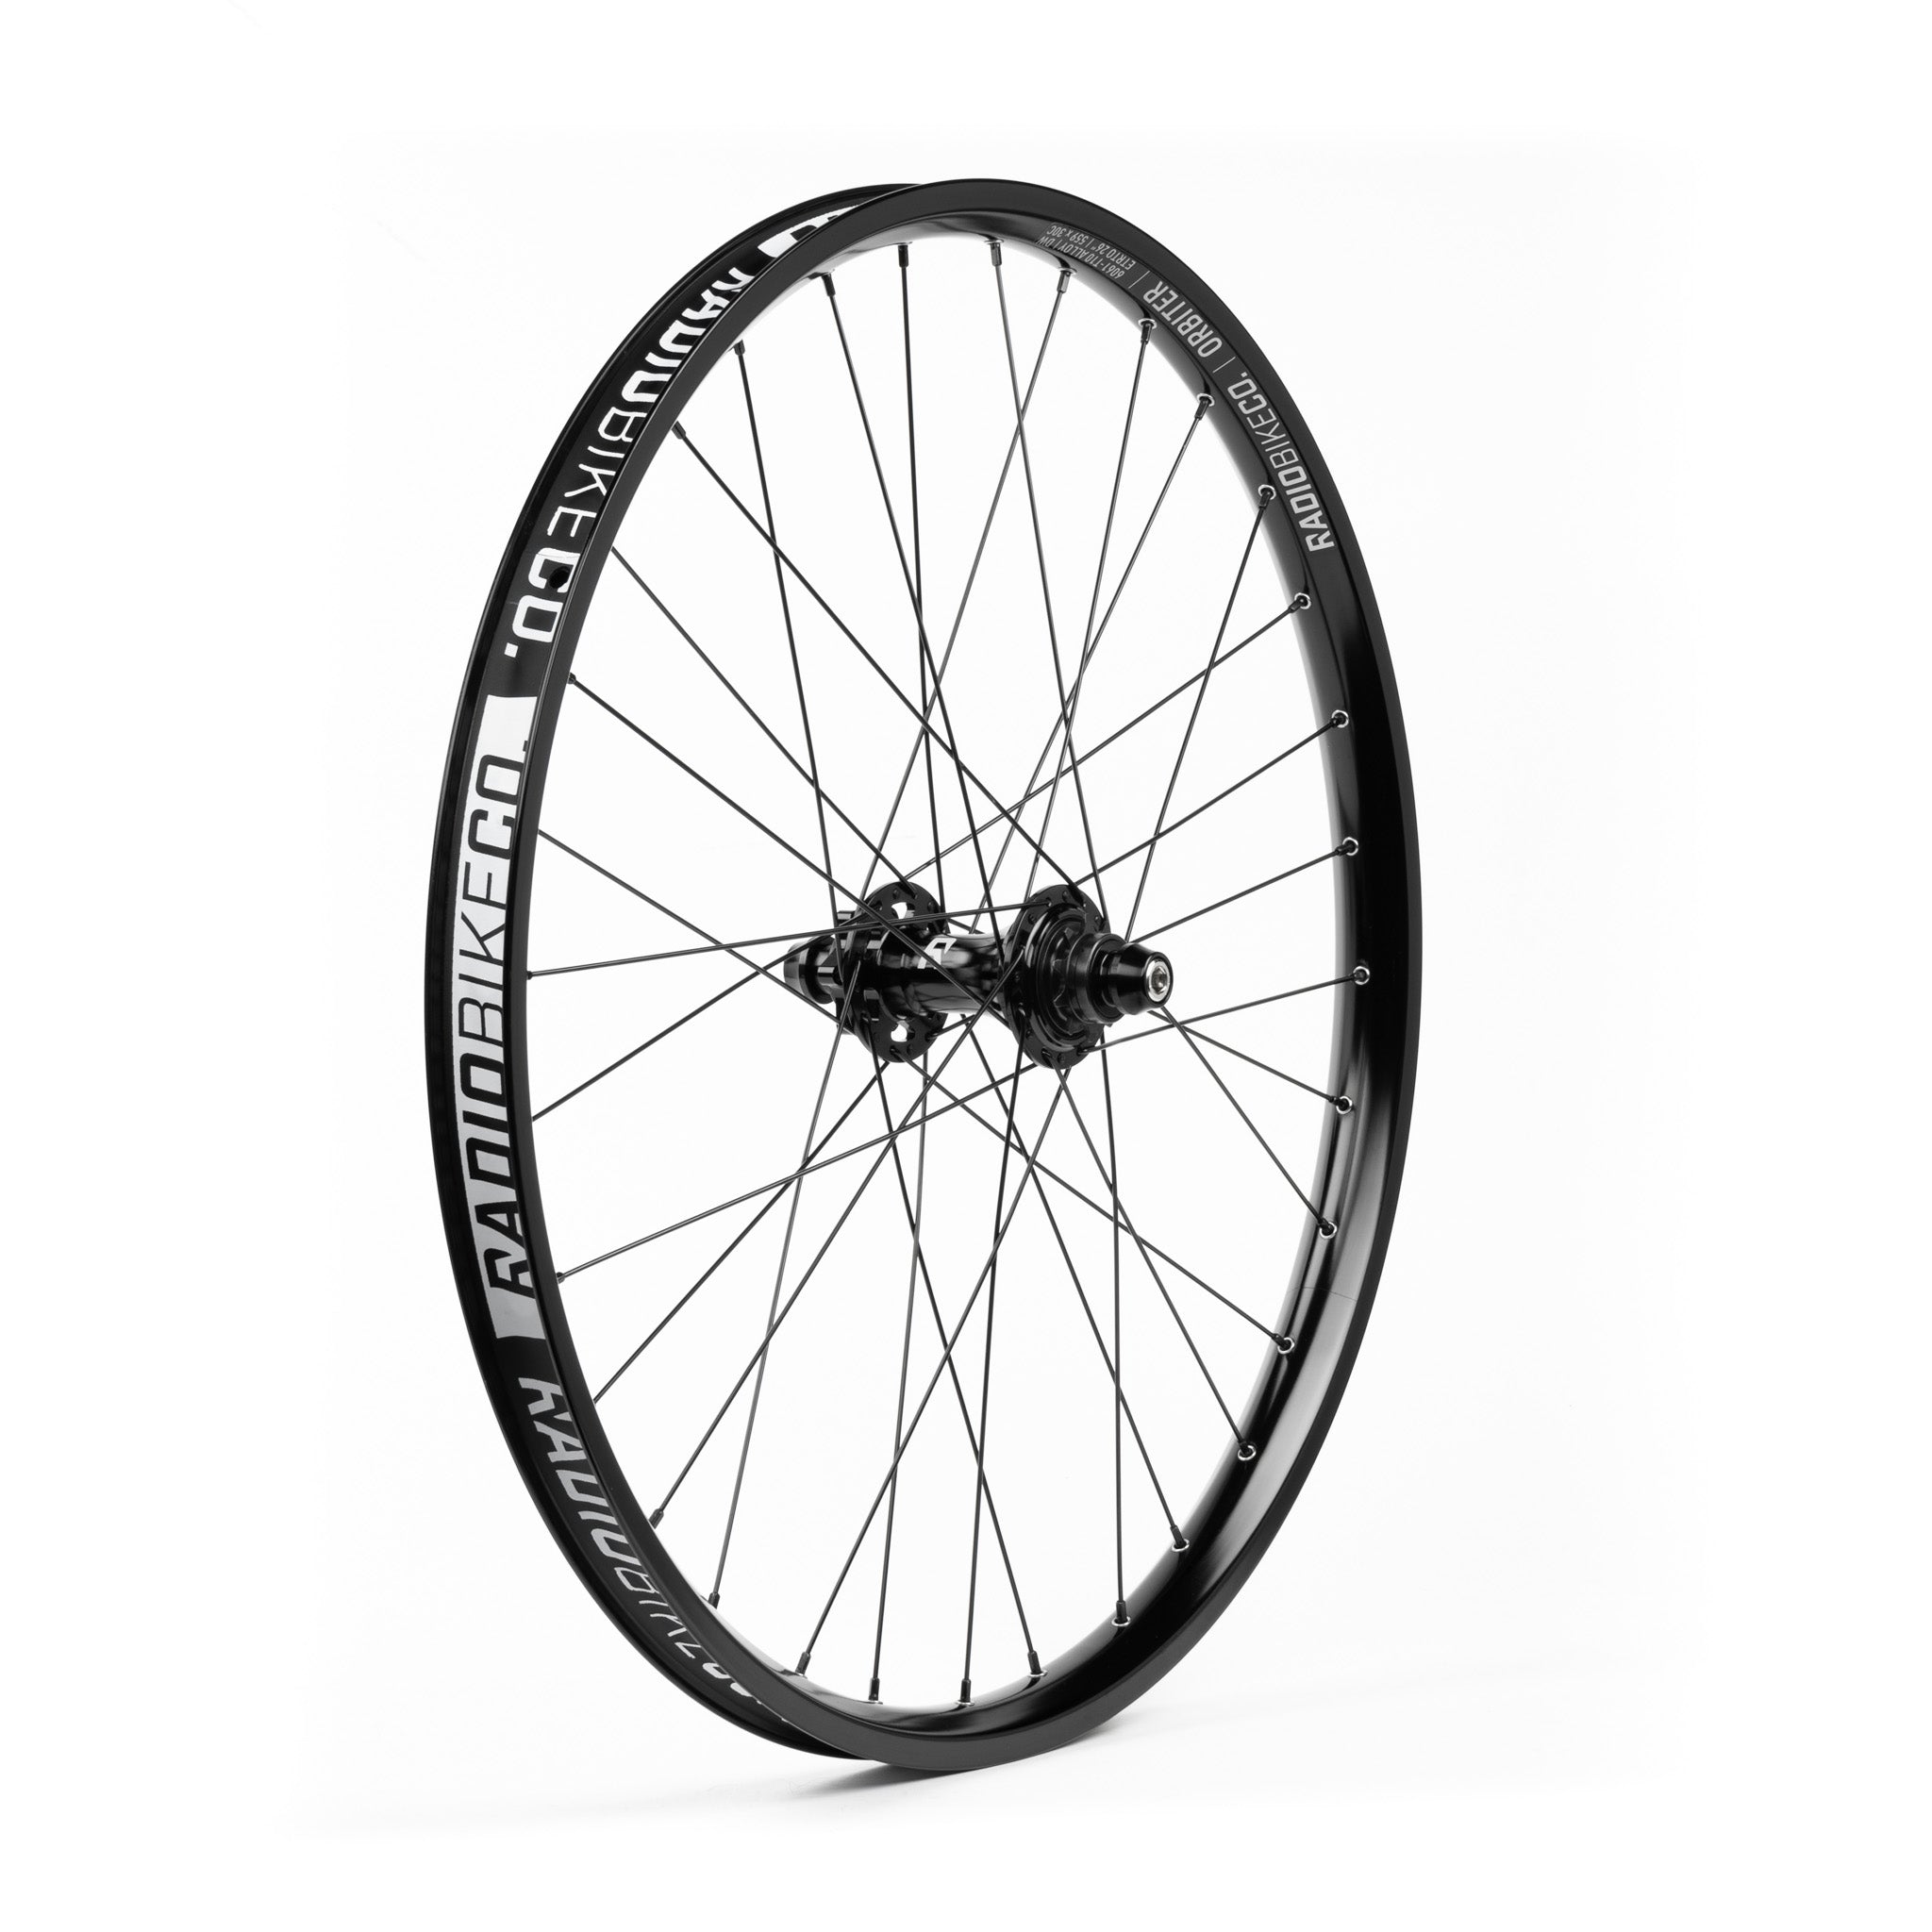 BMX Bike Wheels & Rims Supplies: Hubs, Tires, Pegs, Brakes & more